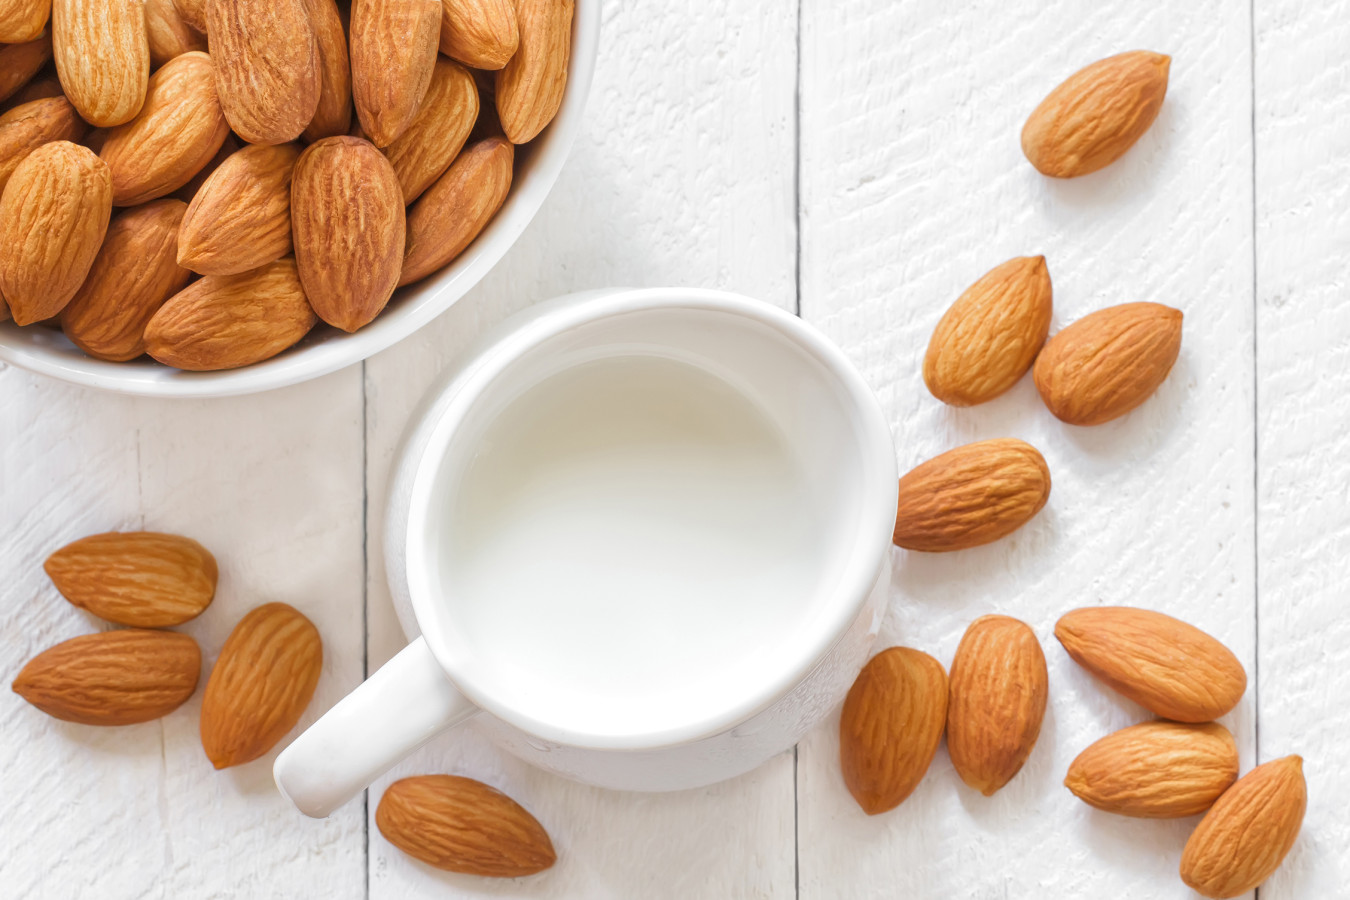 Image Manfaat Kacang Almond Untuk Kesuburan baik Pria Maupun Wanita